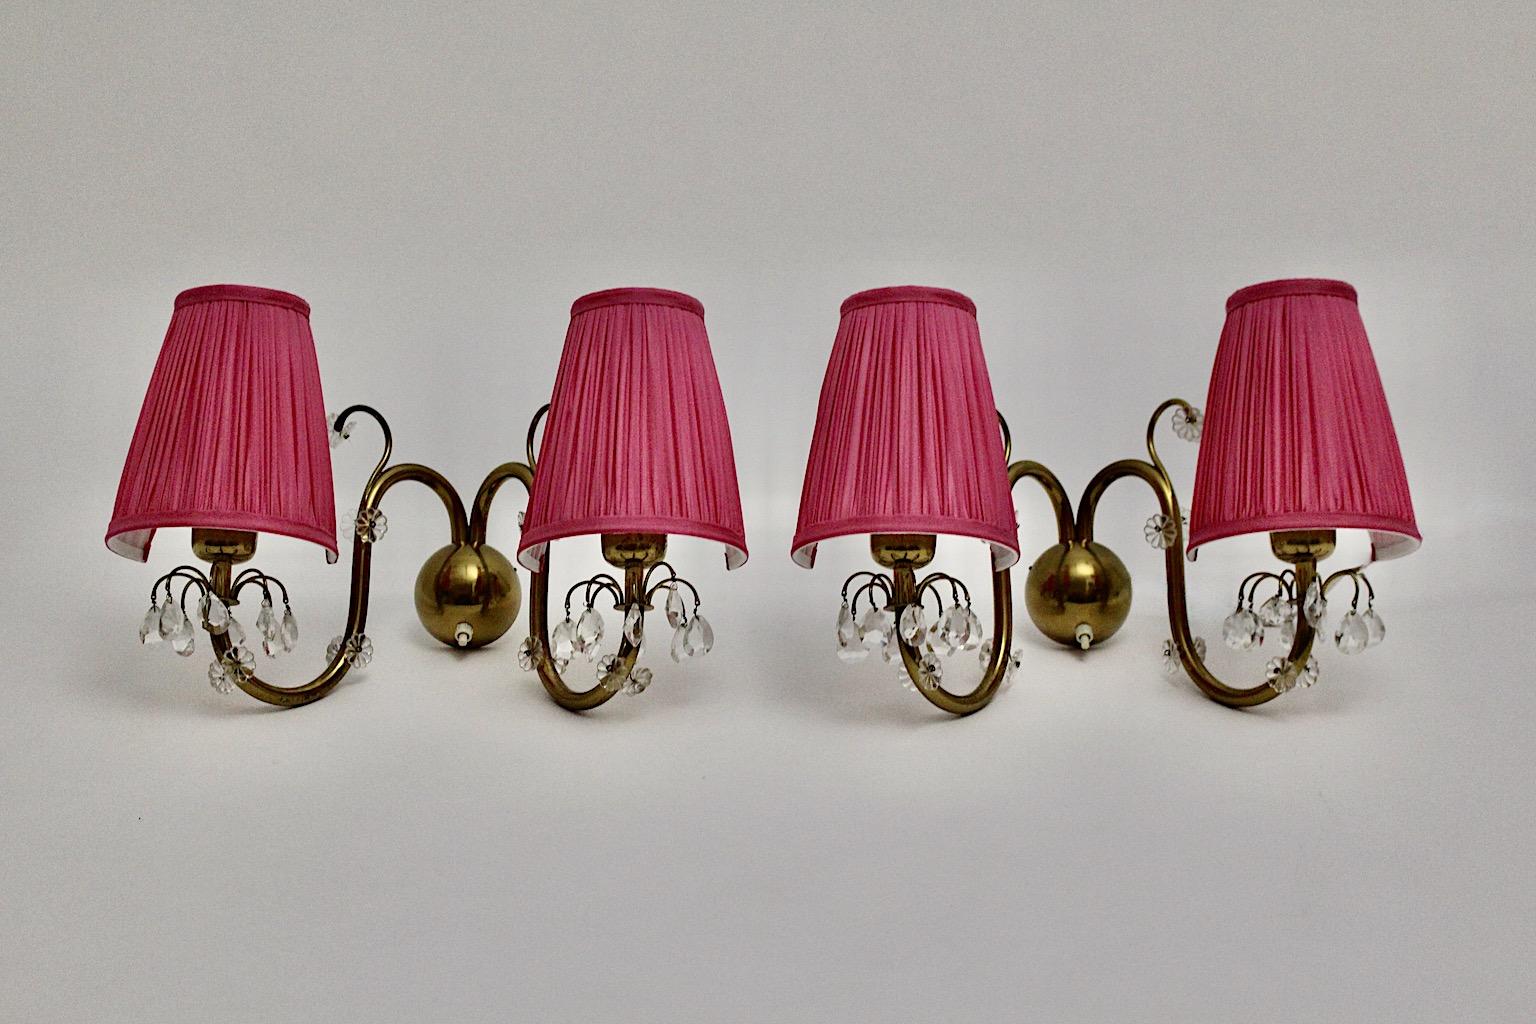 Ein Paar Messing-Kristallglas rosa Mid-Century Modern sconce oder Wandleuchte, die entworfen und hergestellt wurde von Lobmeyr, Wien, 1950er Jahre.
Dieses bezaubernde Paar Wandleuchter hat einen geschwungenen Messingkörper, der mit Blumen und